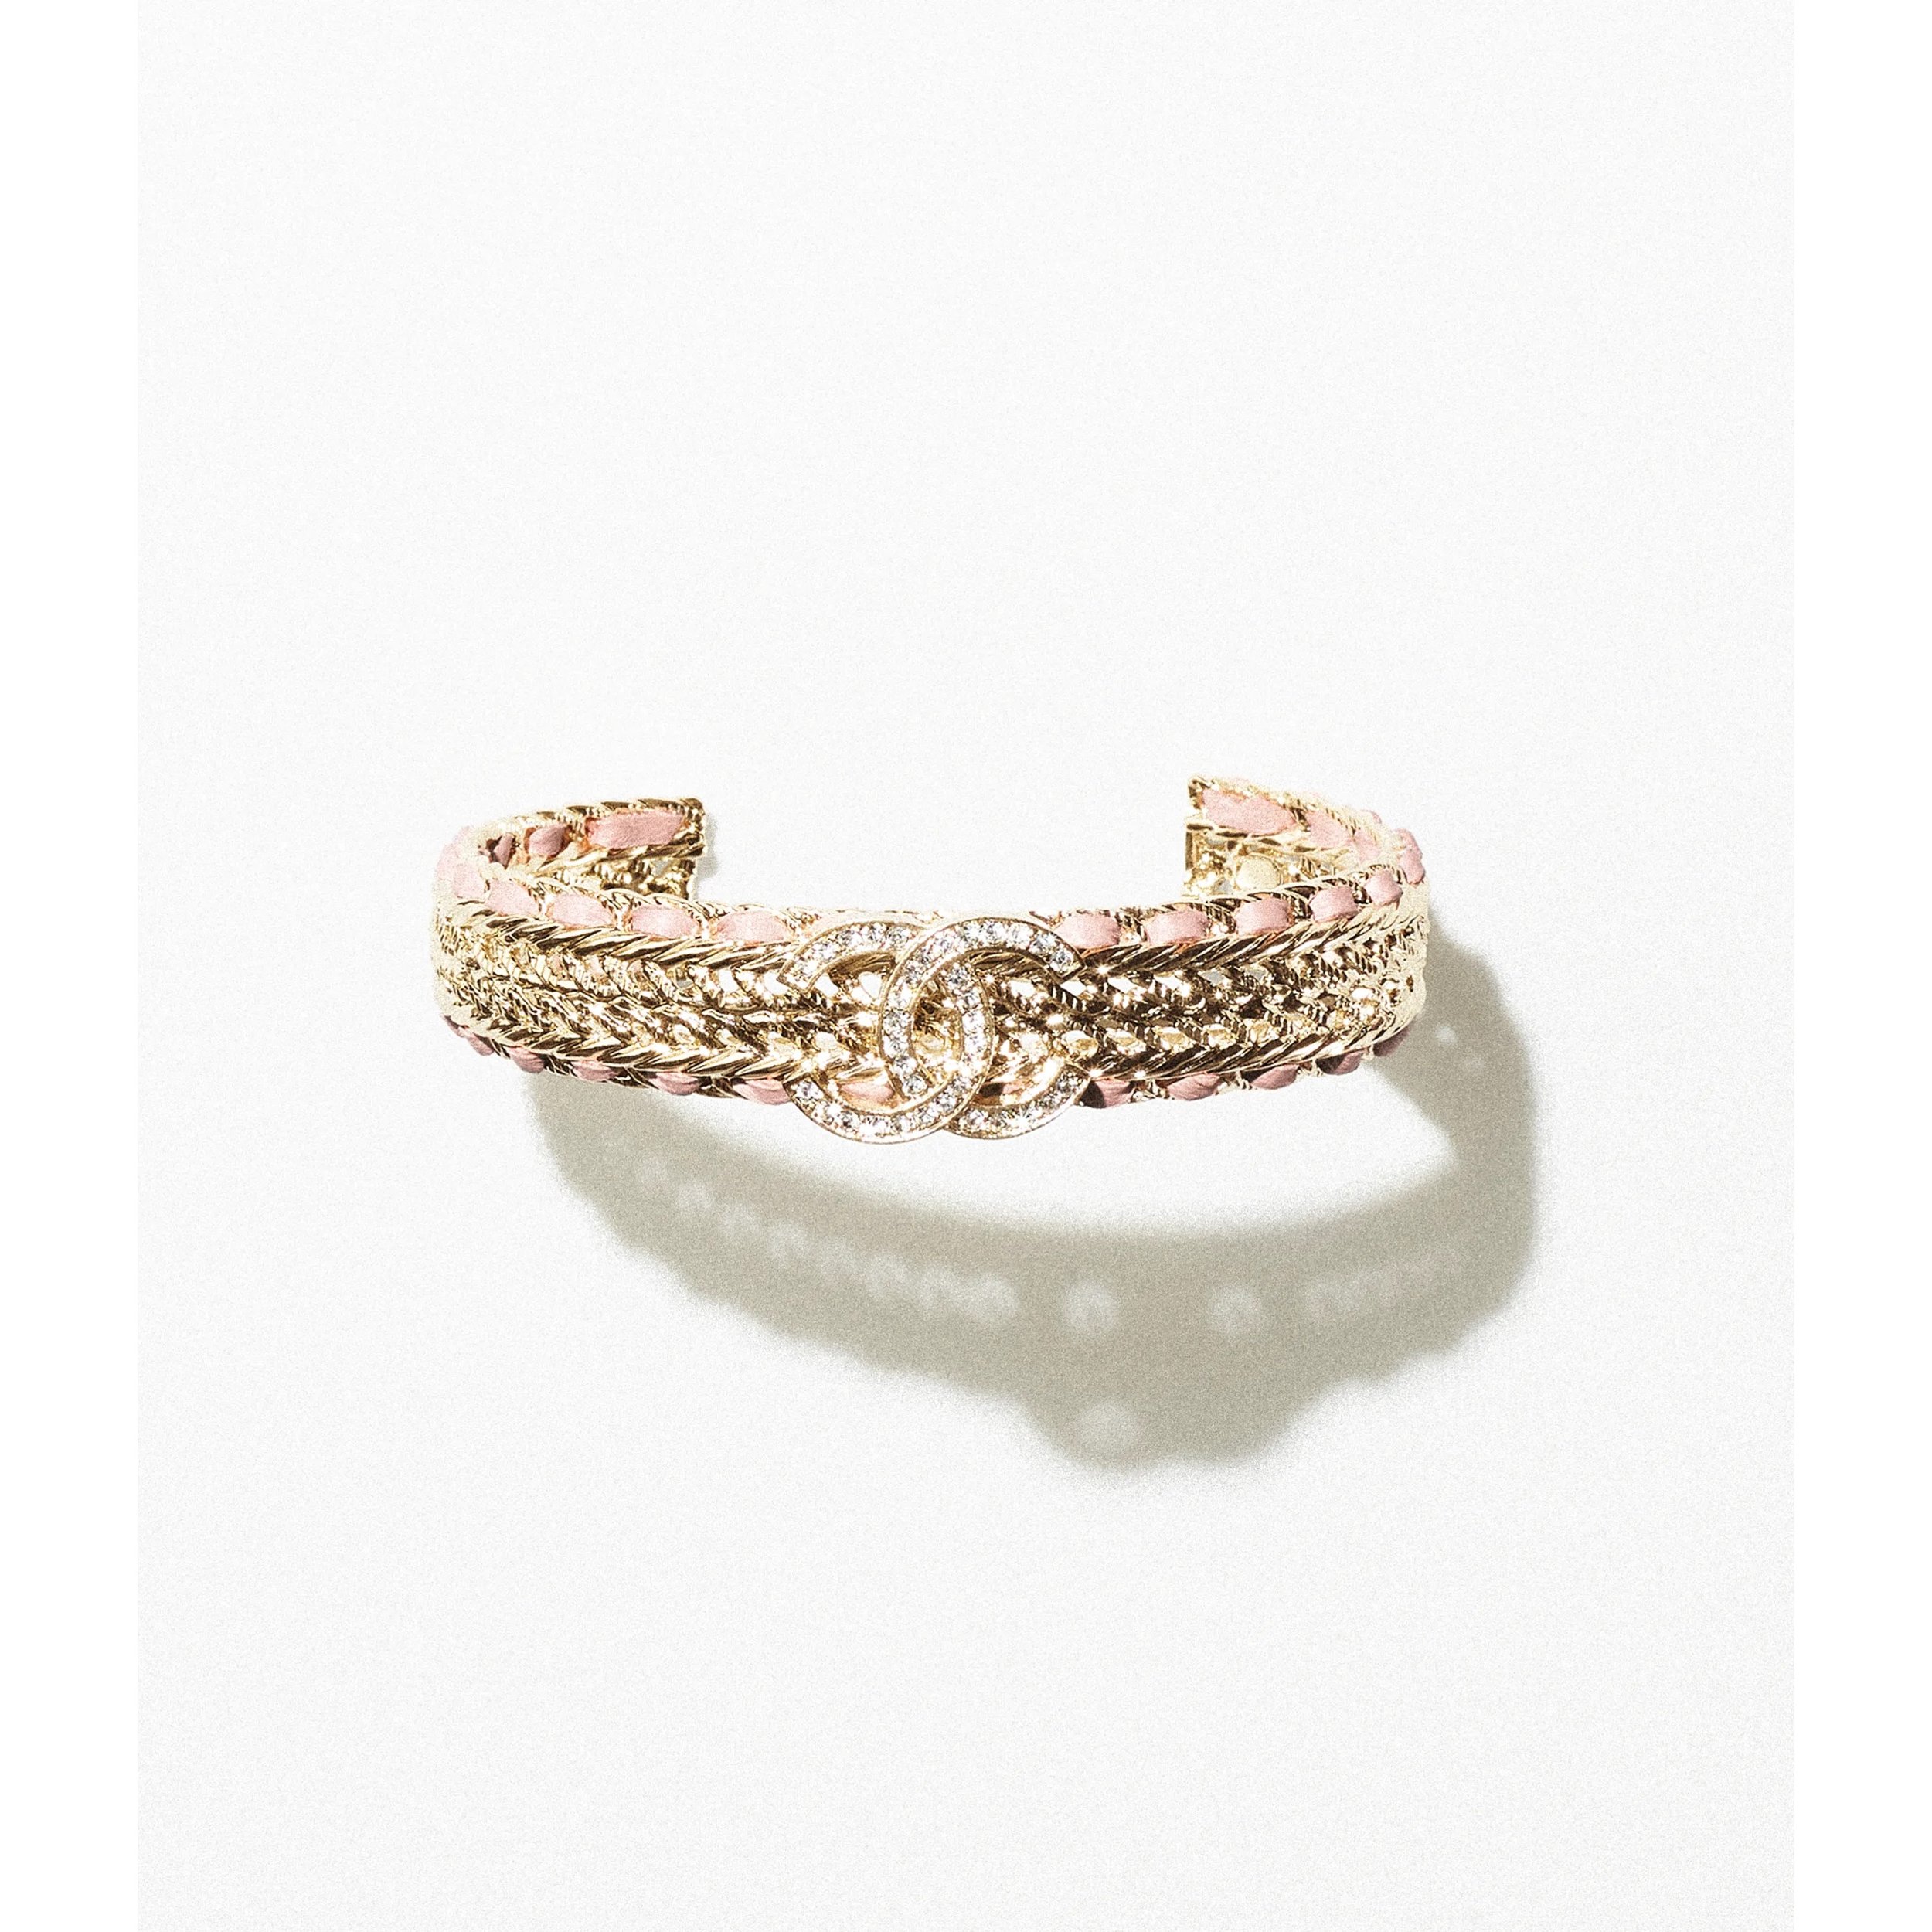 Chanel Chain Logo Cuff Bracelet in Metal, Lambskin & Strass Gold, Pink & Crystal.jpg